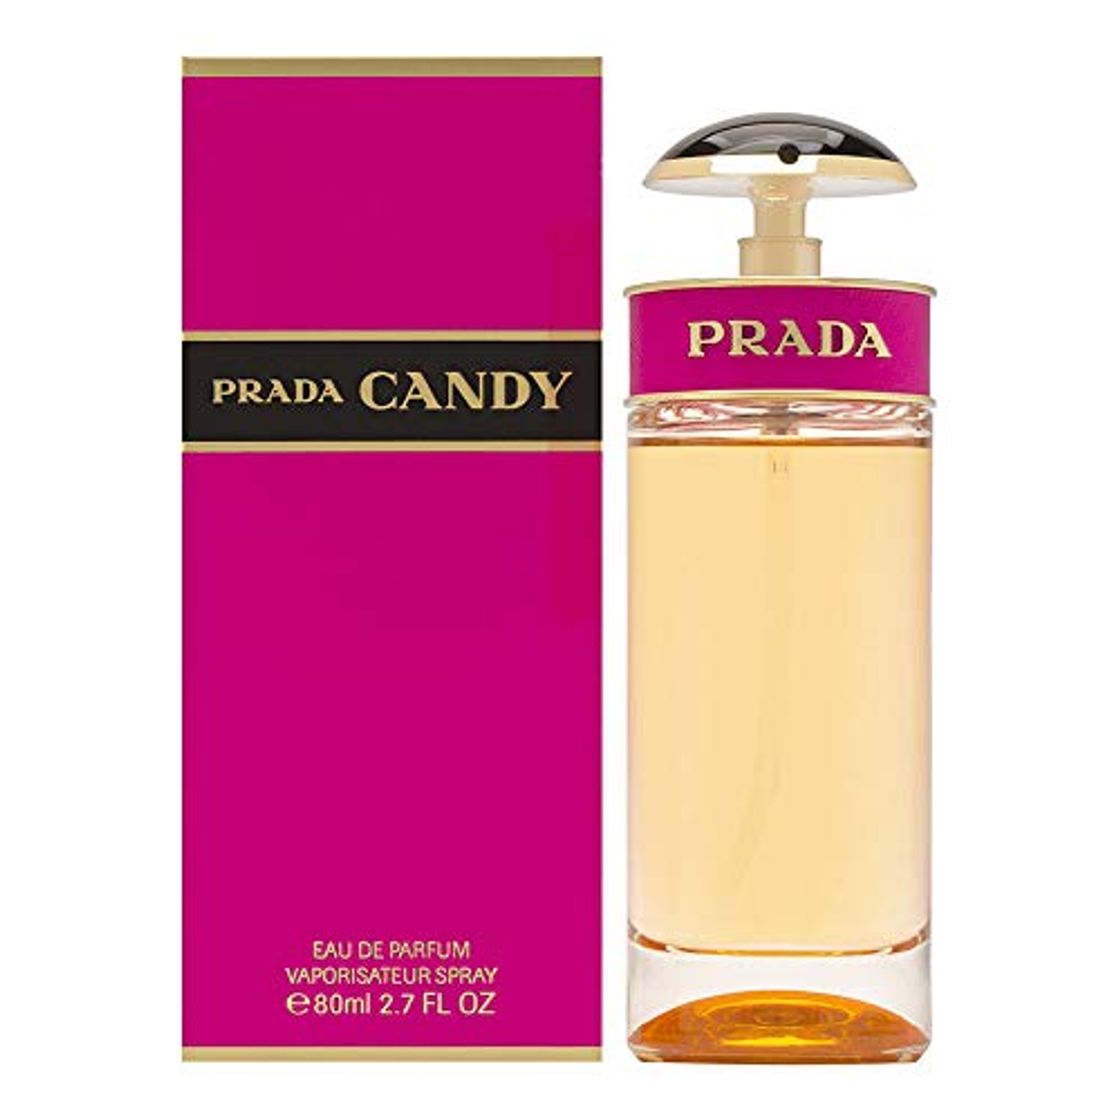 PRADA CANDY, de Prada